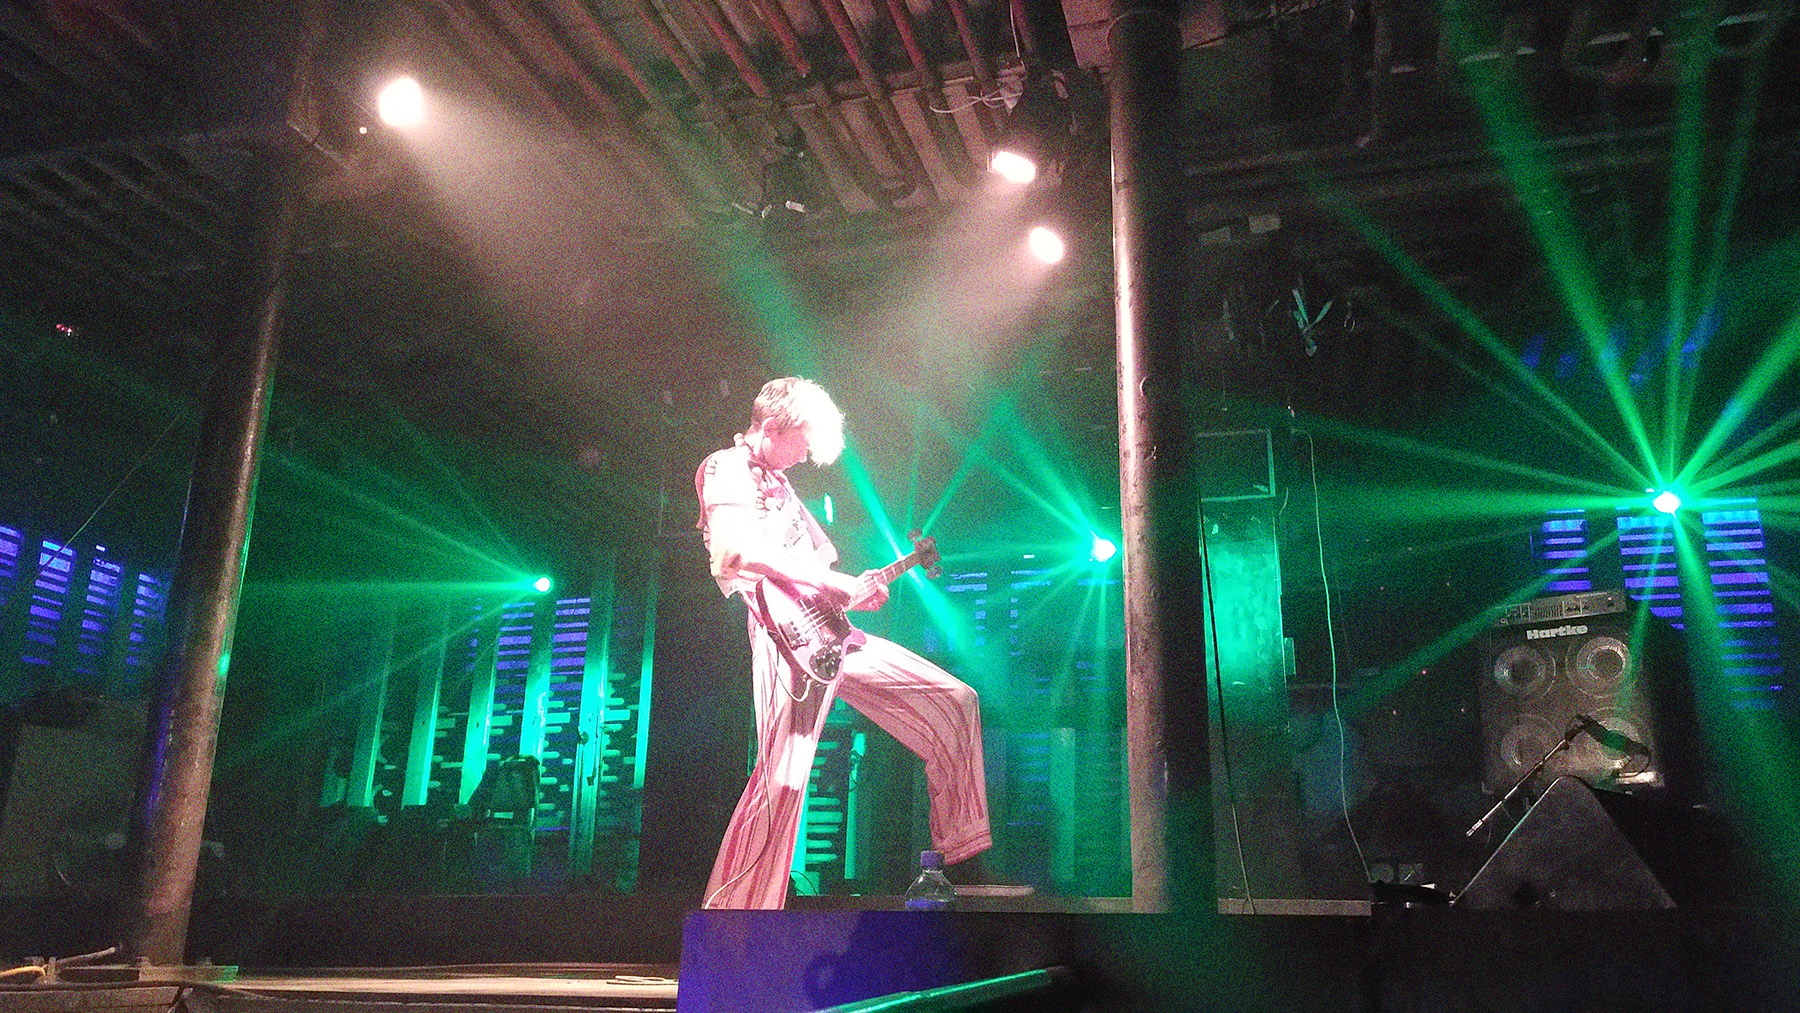 Konzert von Siksa 2022. Ein Mensch steht in grünem Licht auf der Bühne und spielt Gitarre.